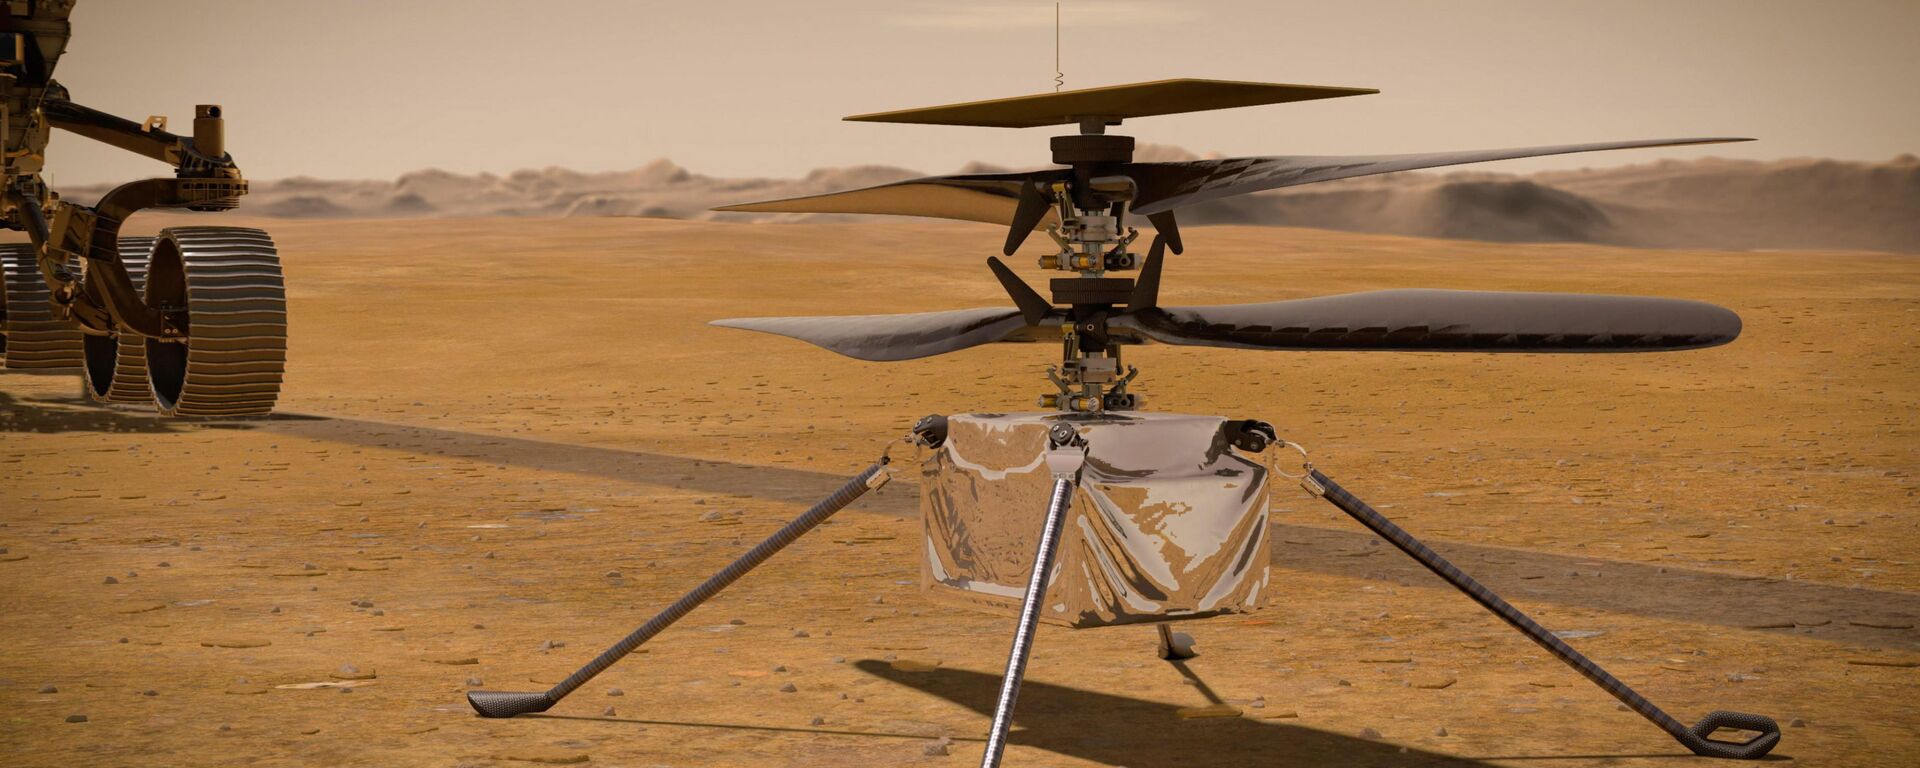 Helicóptero Mars Ingenuity da NASA na superfície de Marte, perto do rover Perseverance, à esquerda - Sputnik Brasil, 1920, 16.12.2021